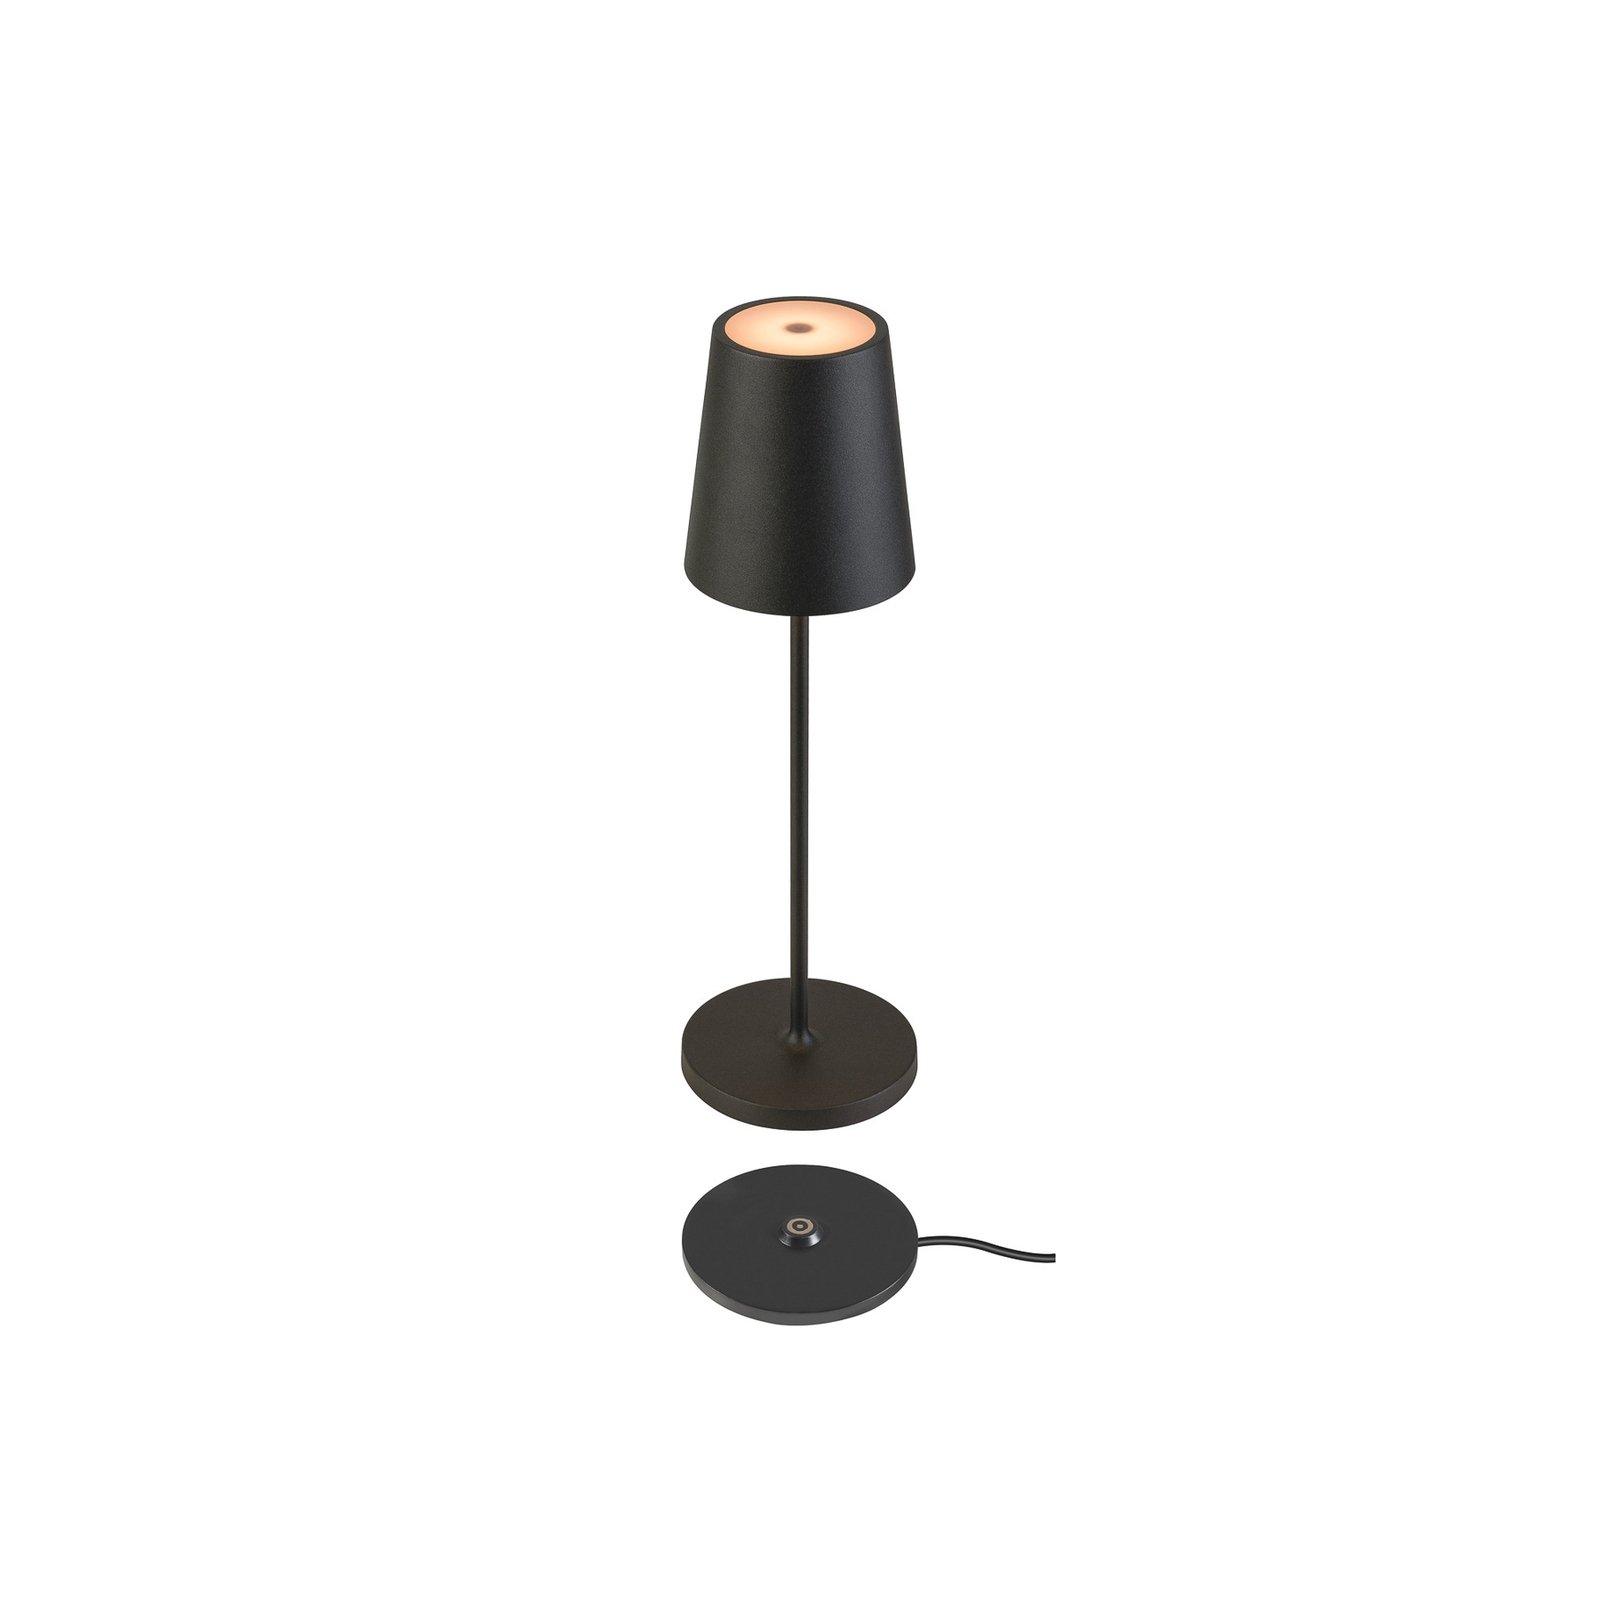 SLV LED baterijska svjetiljka Vinolina Two, crna, aluminij, Ø 11 cm, IP65